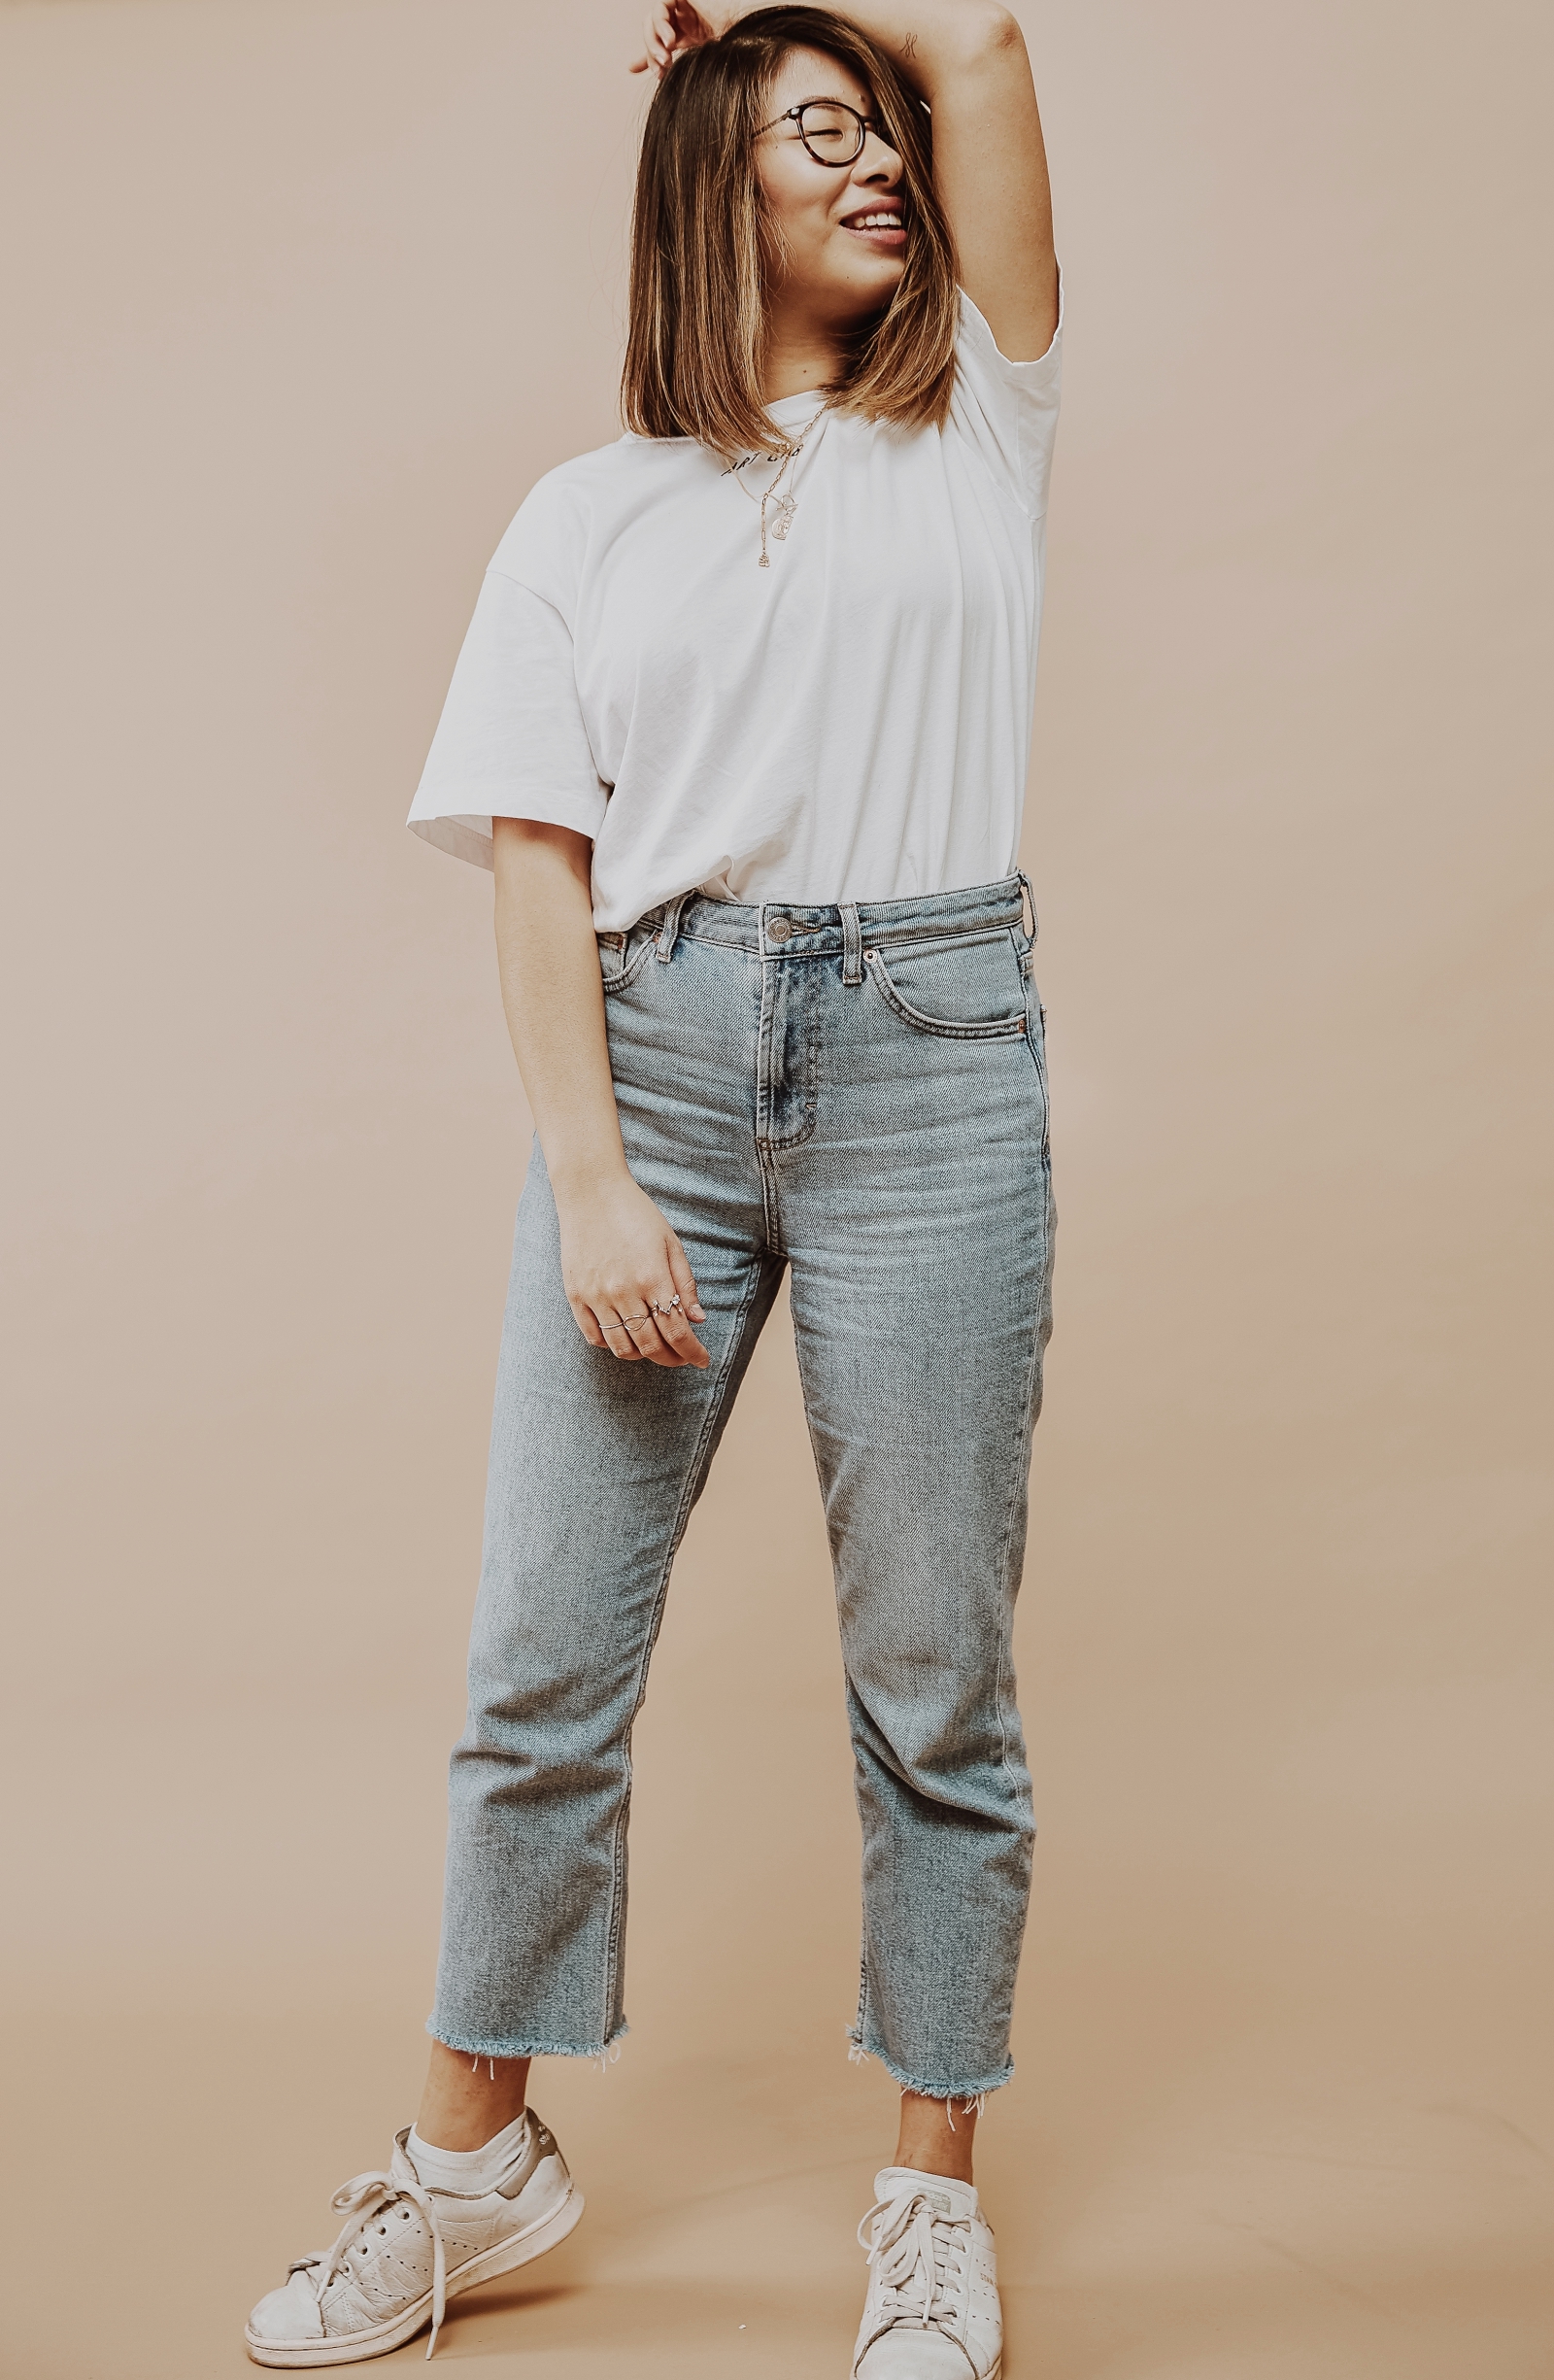 inhighfashionlaune | Jeans Guide: die perfekten Jeans für kleine Frauen